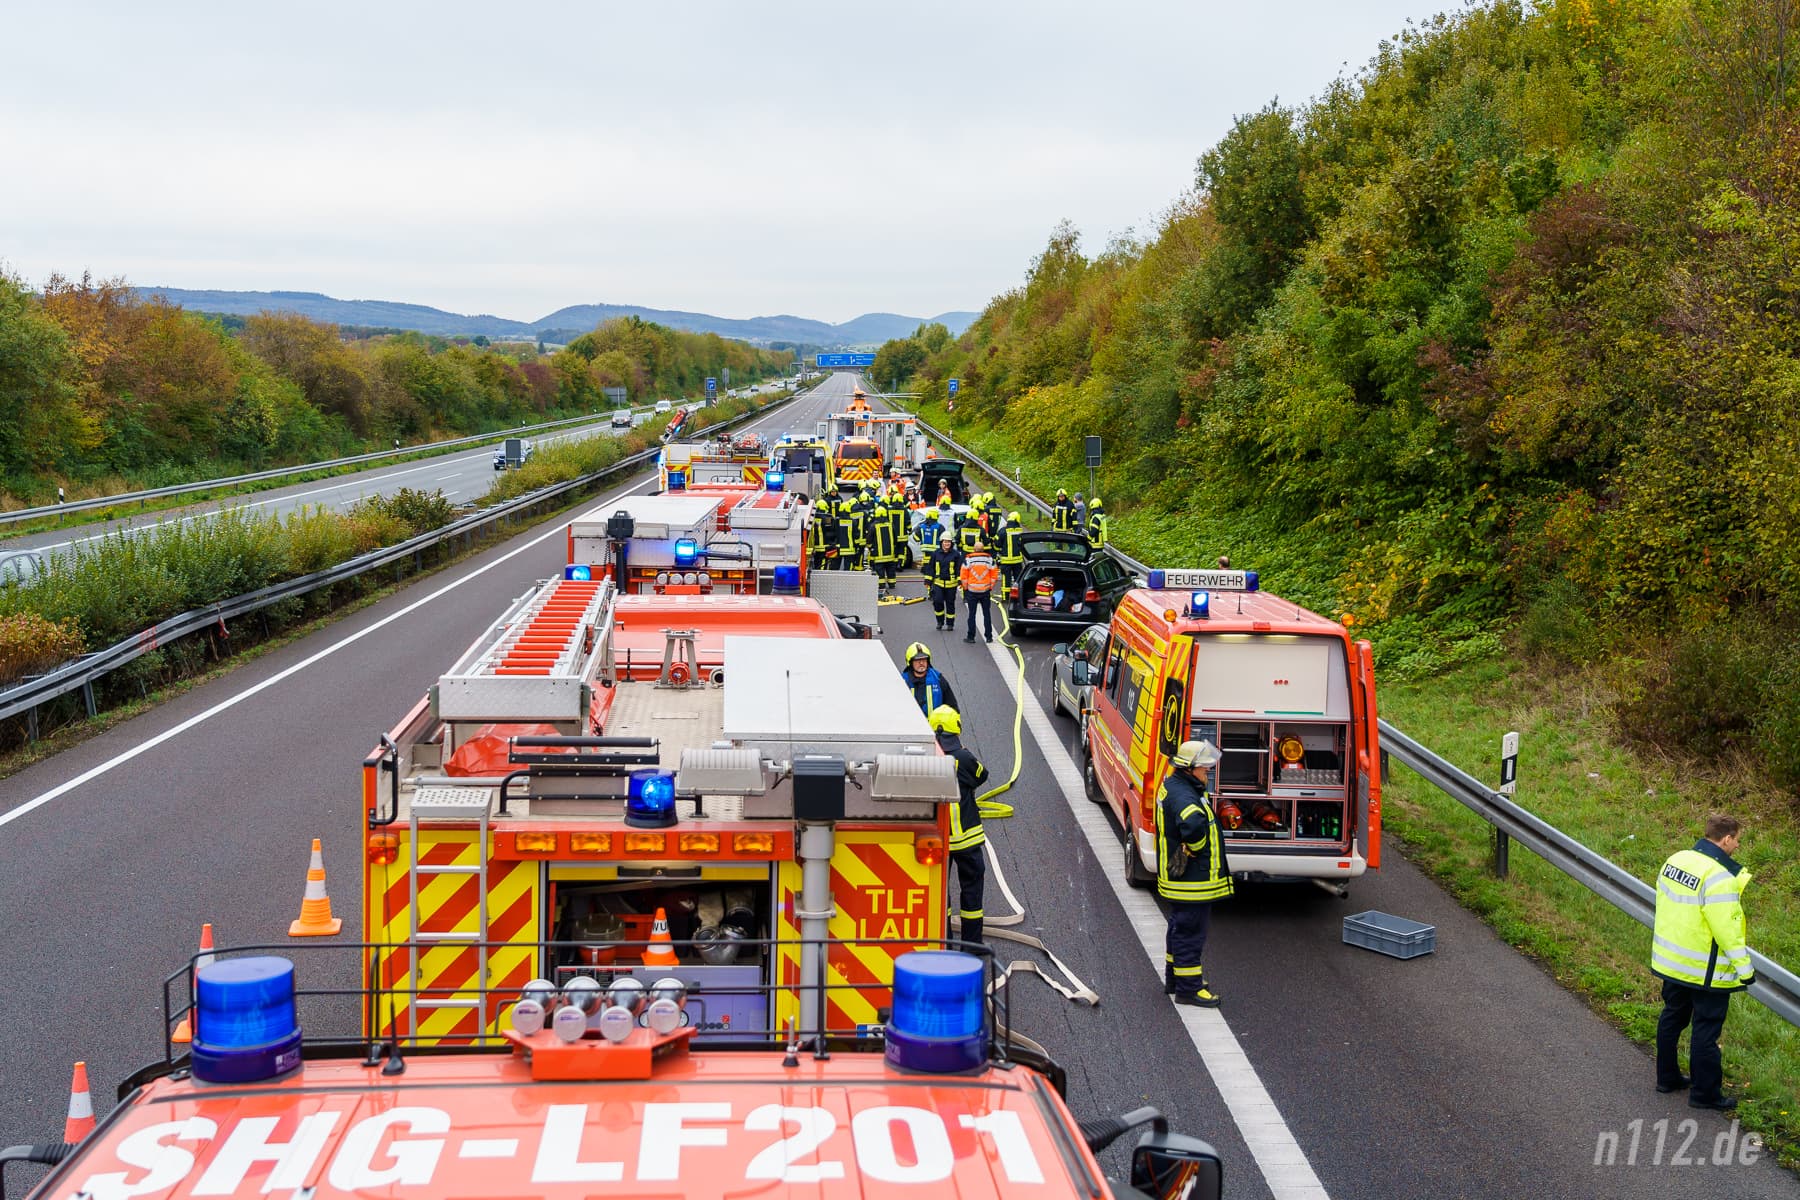 Viel logistischer Aufwand: Bei einem Verkehrsunfall sind schnell 60 bis 100 Einsatzkräfte an der Unfallstelle! (Foto: n112.de/Stefan Hillen)